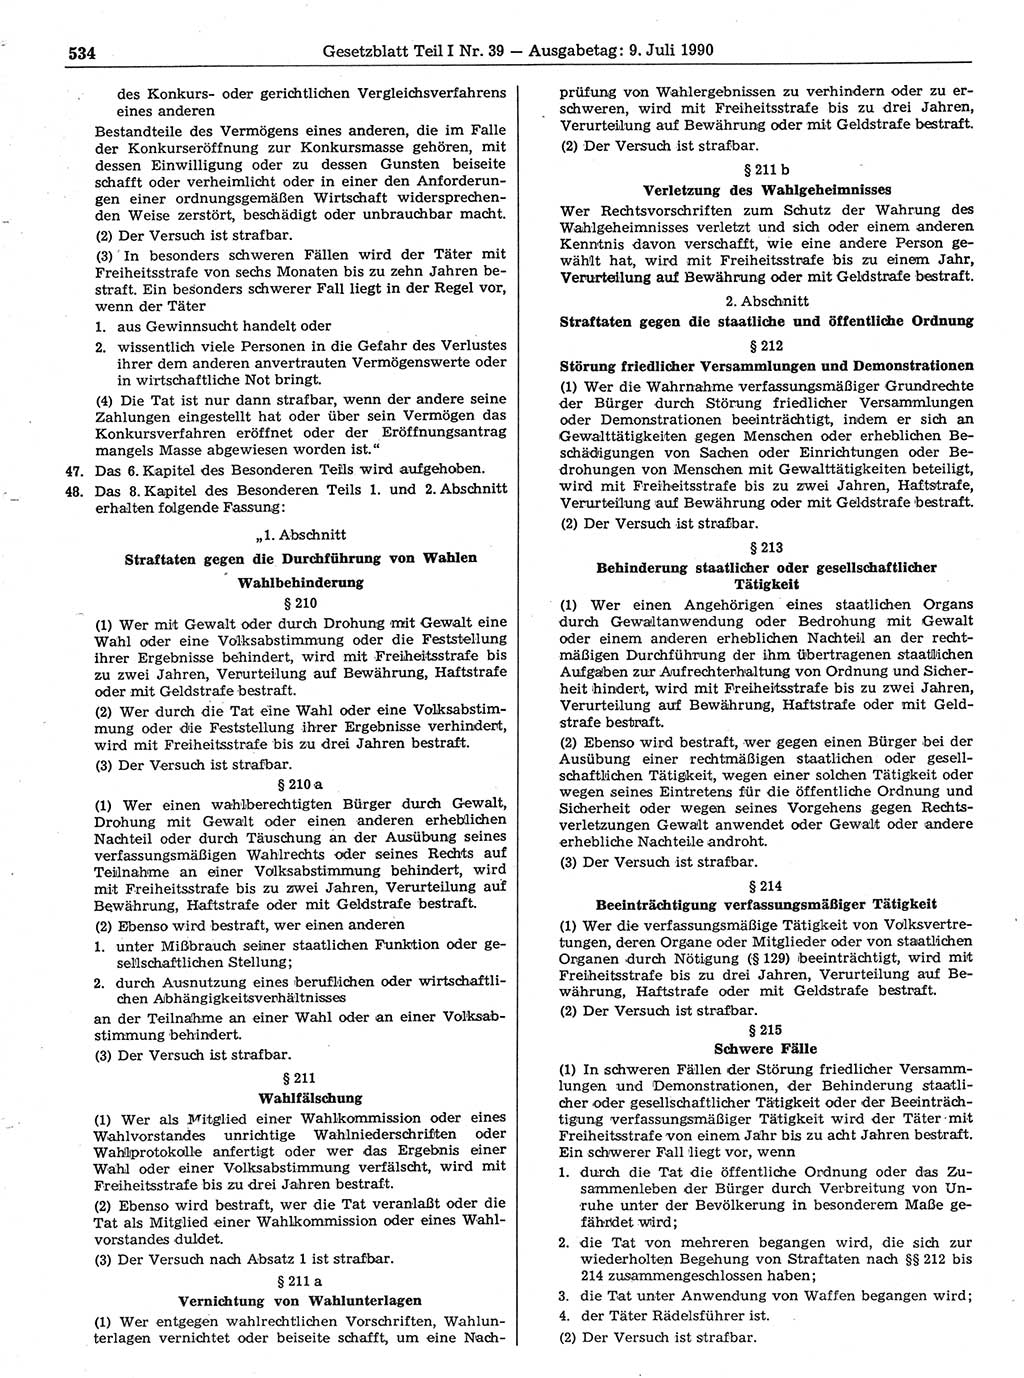 Gesetzblatt (GBl.) der Deutschen Demokratischen Republik (DDR) Teil Ⅰ 1990, Seite 534 (GBl. DDR Ⅰ 1990, S. 534)